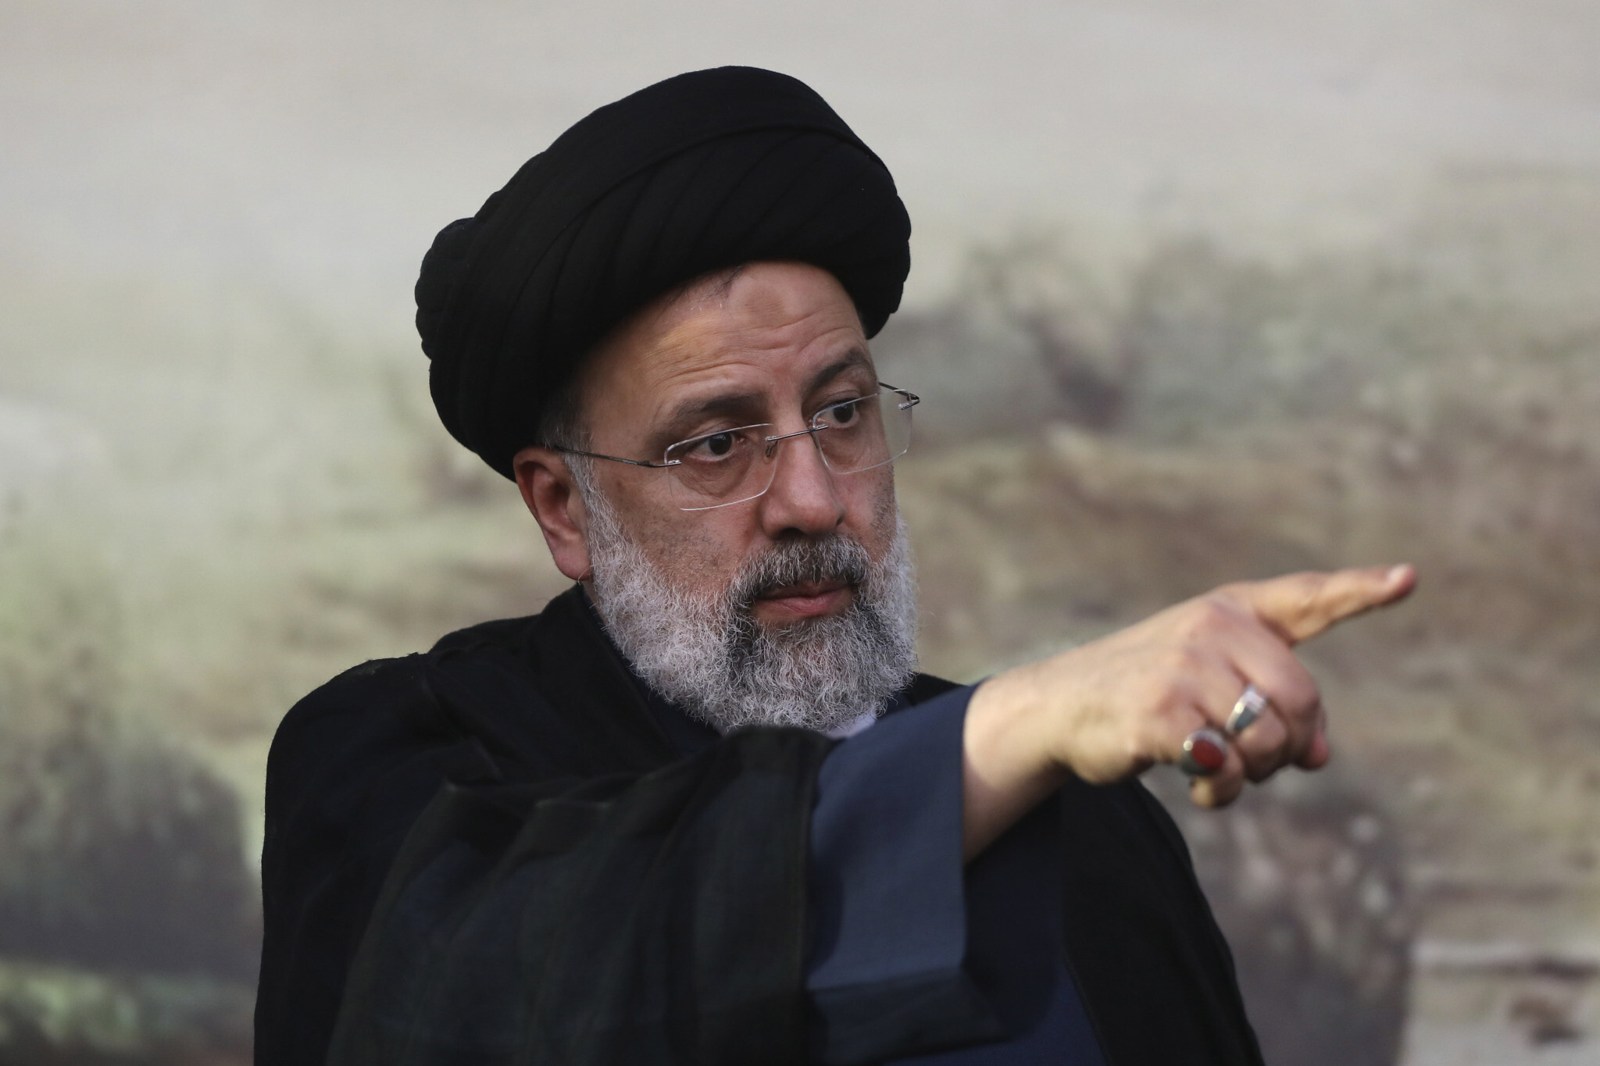 Irán no reanudará conversaciones nucleares hasta que Raisi asuma el poder